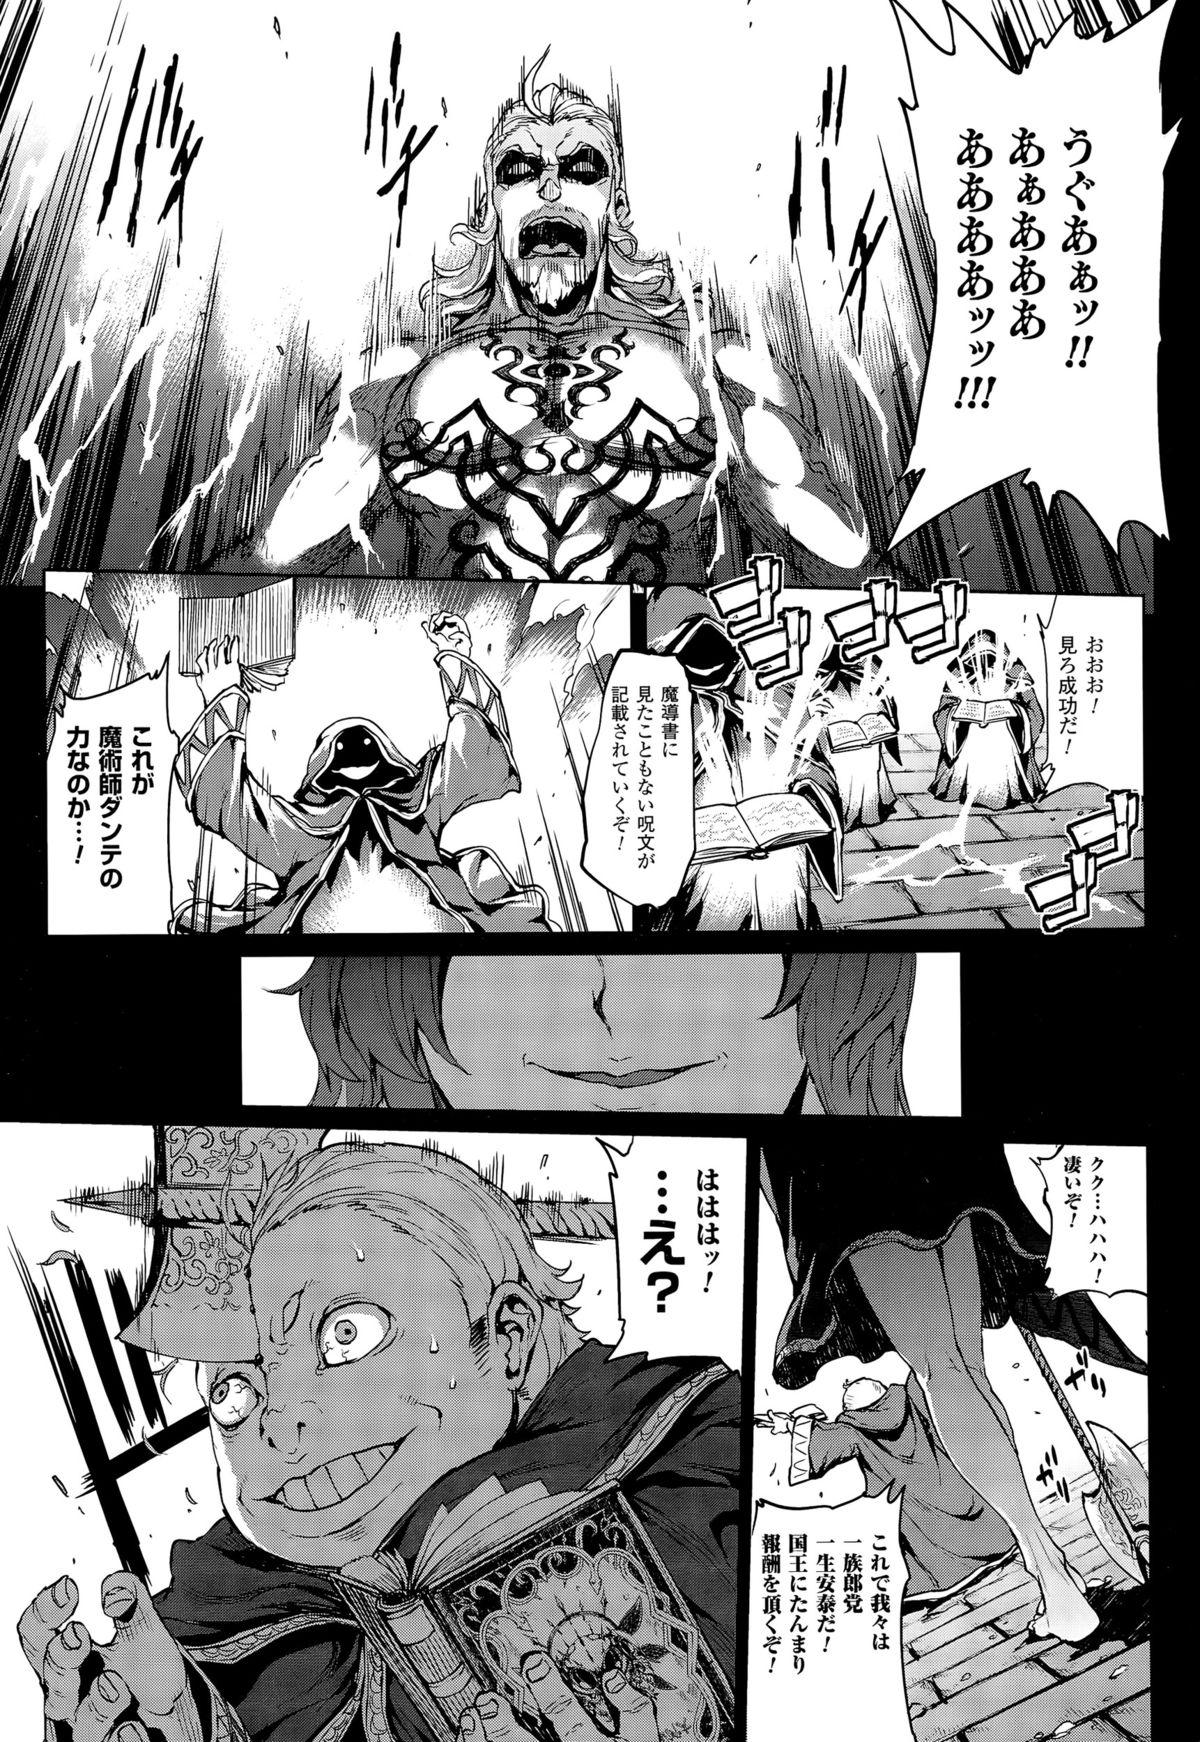 [Erect Sawaru] Shinkyoku no Grimoire -PANDRA saga 2nd story- CH 13-20 125